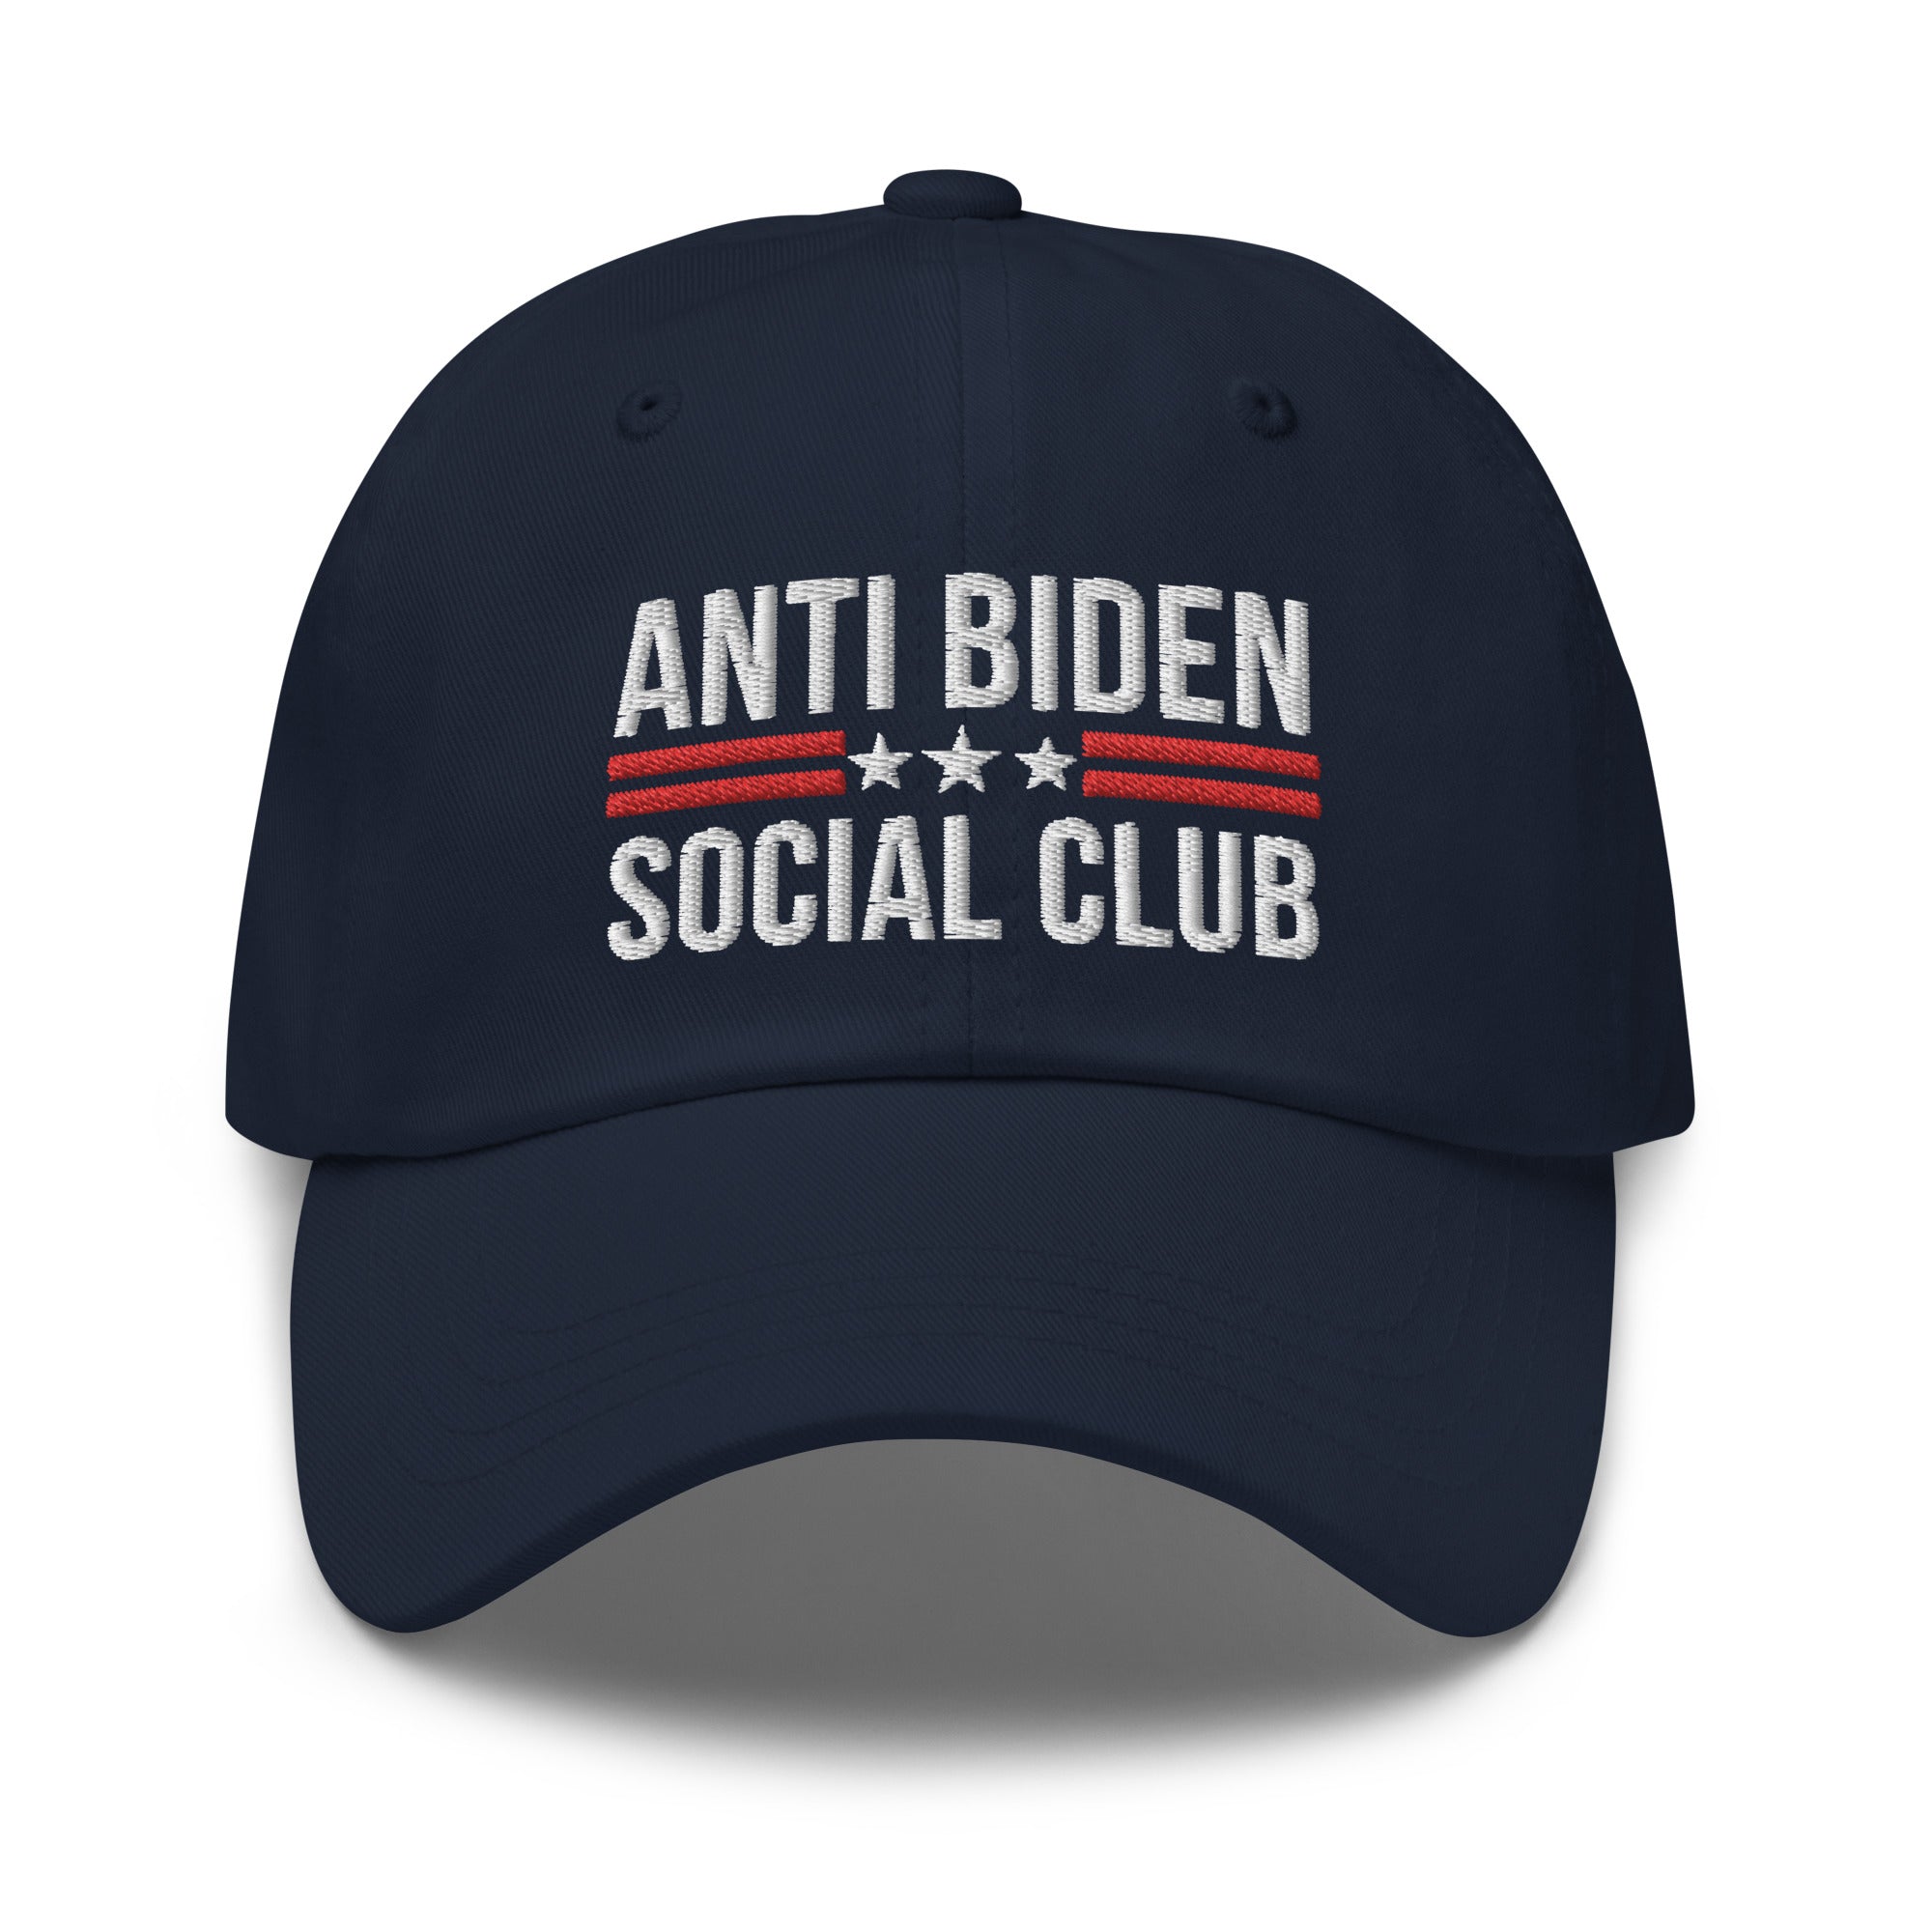 Anti Biden Social Club Dad Hat, FJB Hat, Conservative Hat, Republican Dad Cap, Impeach Biden, Biden Sucks, Anti Biden Hat